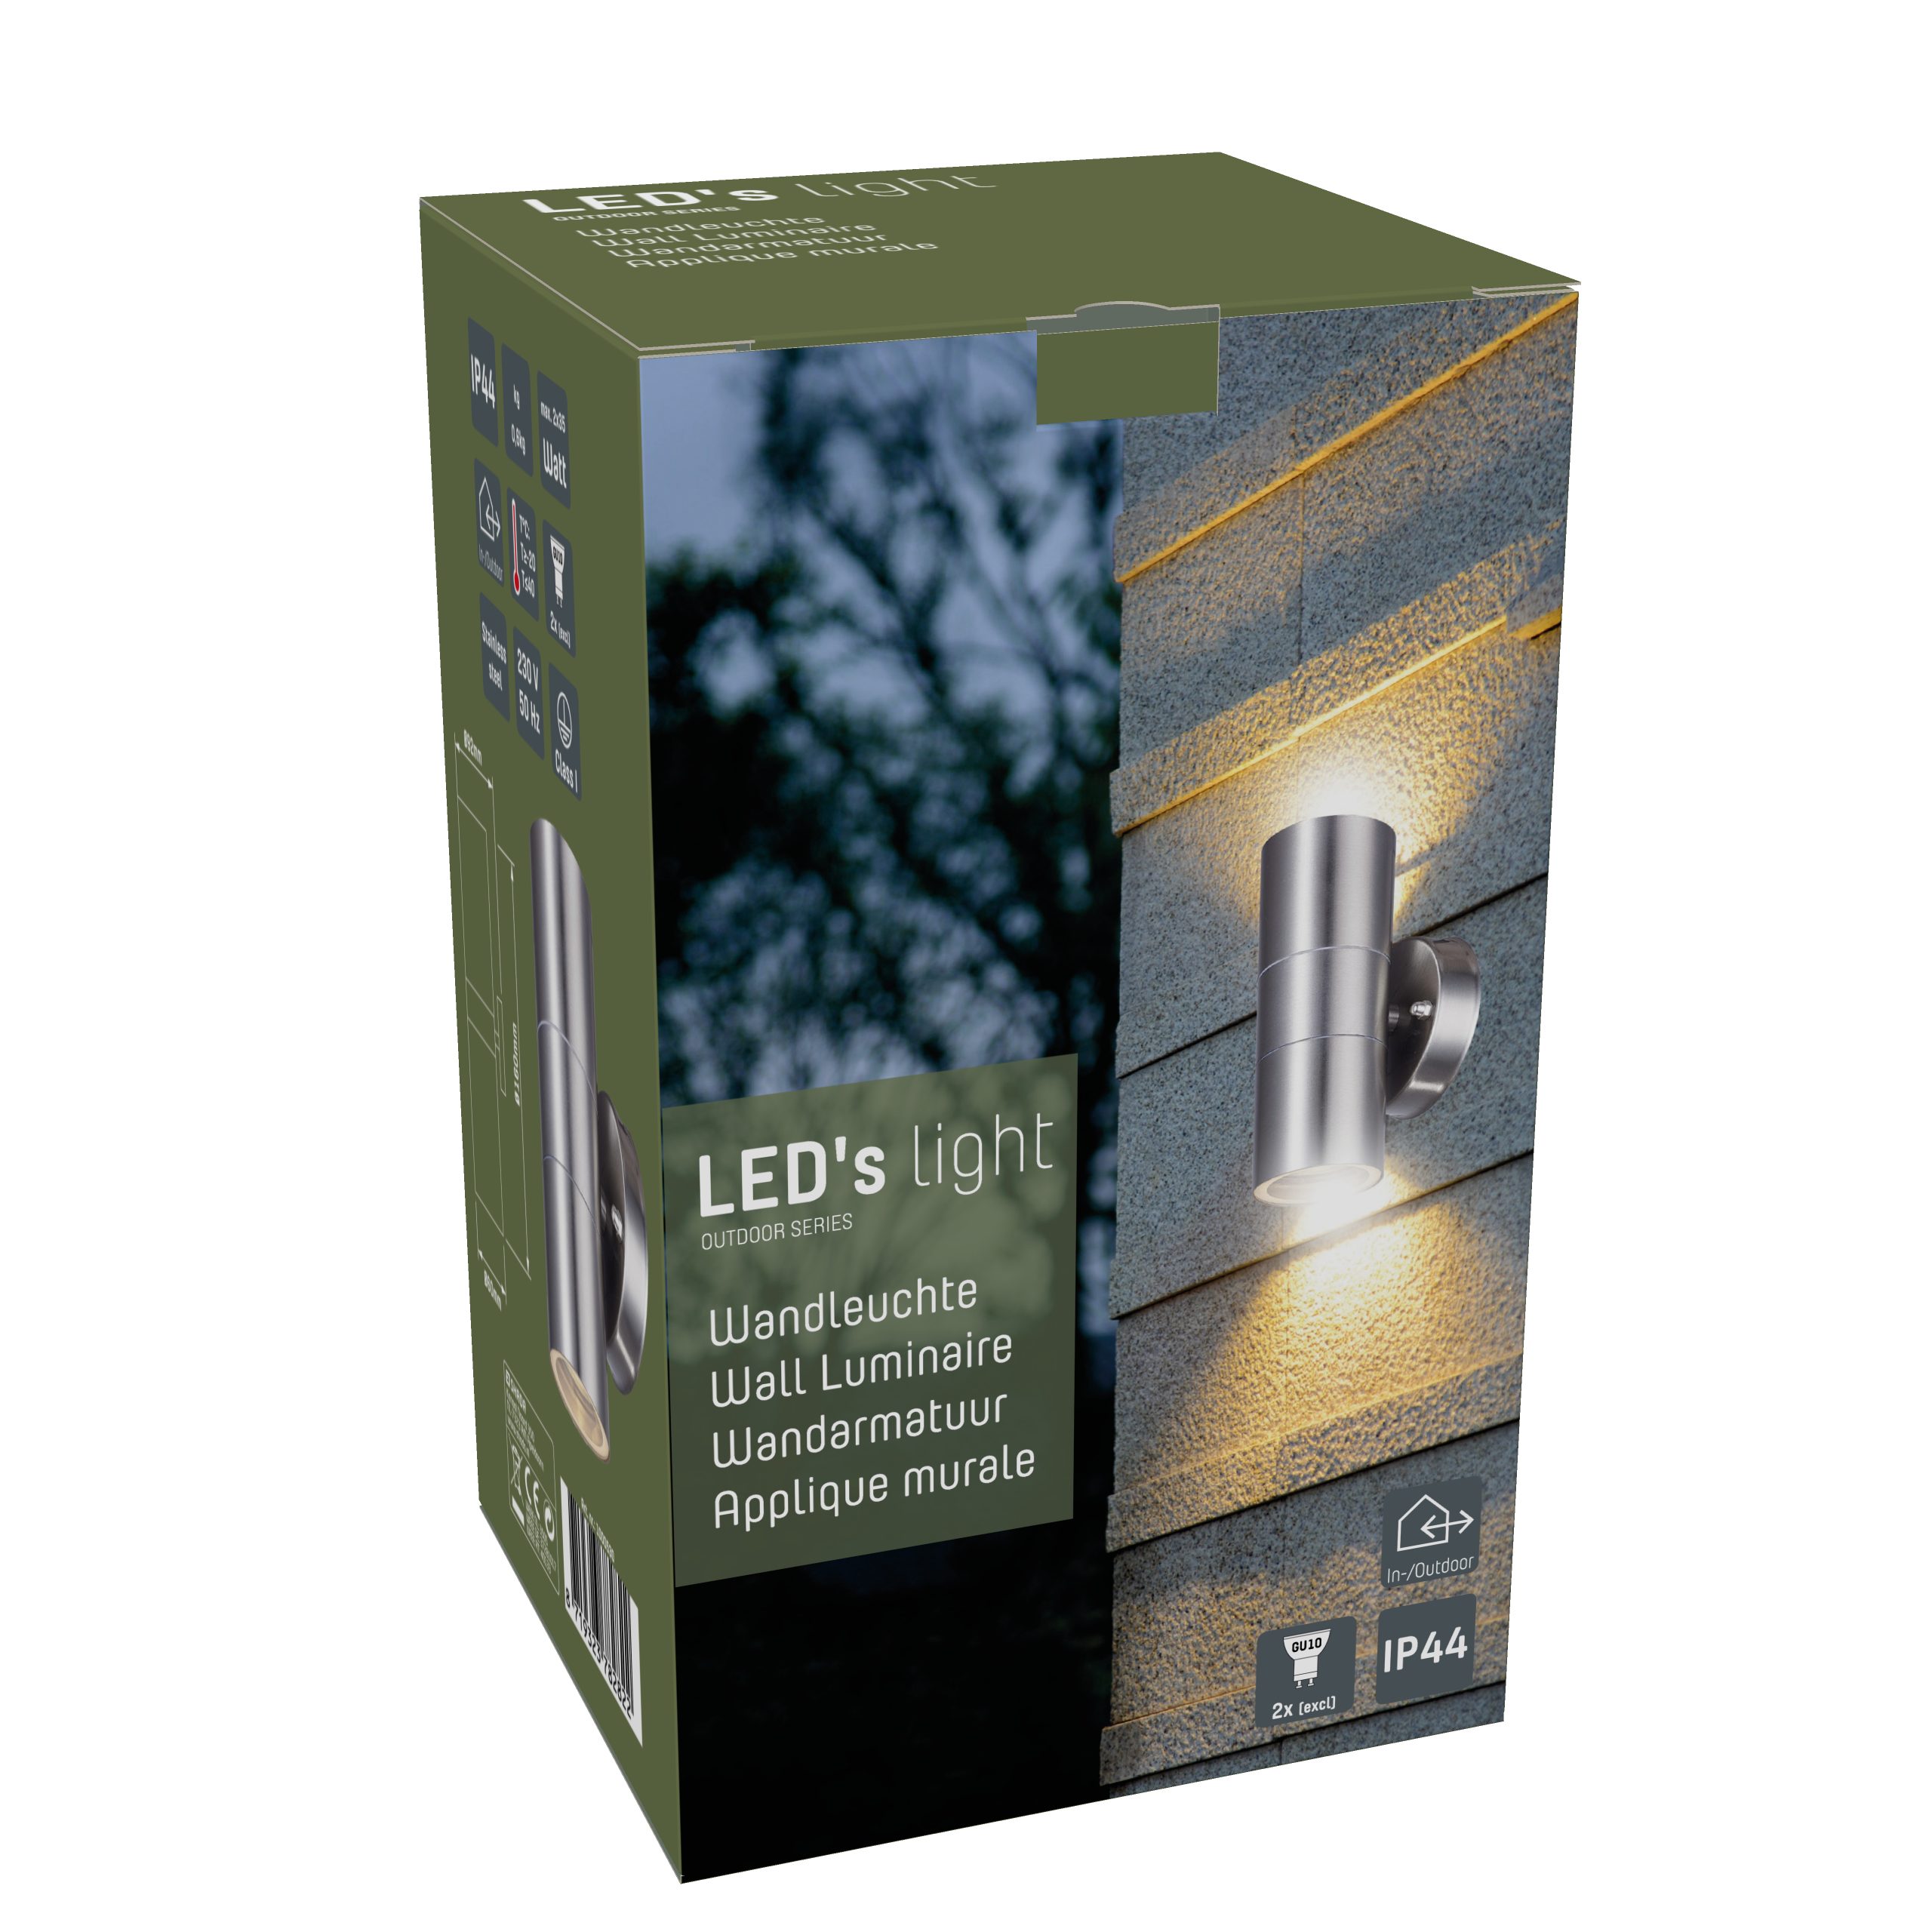 LED's LED 1000530 bis Edelstahl IP44 LED, 2x Außen-Wandleuchte, für GU10 35W LED light und Außen-Wandleuchte Halogen